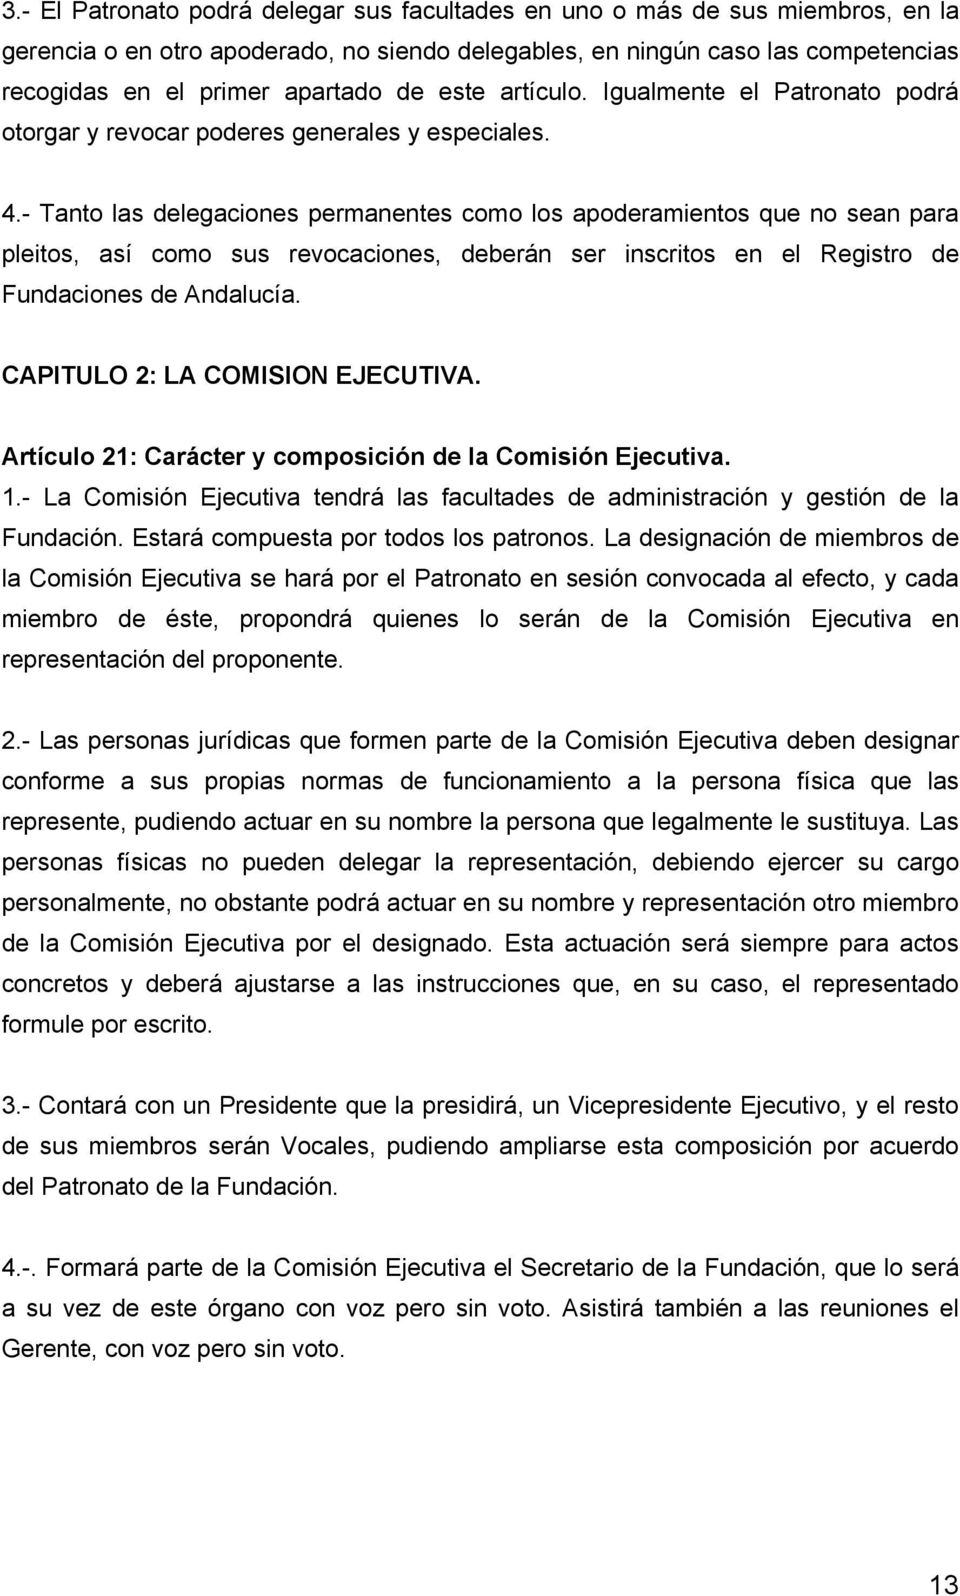 - Tanto las delegaciones permanentes como los apoderamientos que no sean para pleitos, así como sus revocaciones, deberán ser inscritos en el Registro de Fundaciones de Andalucía.